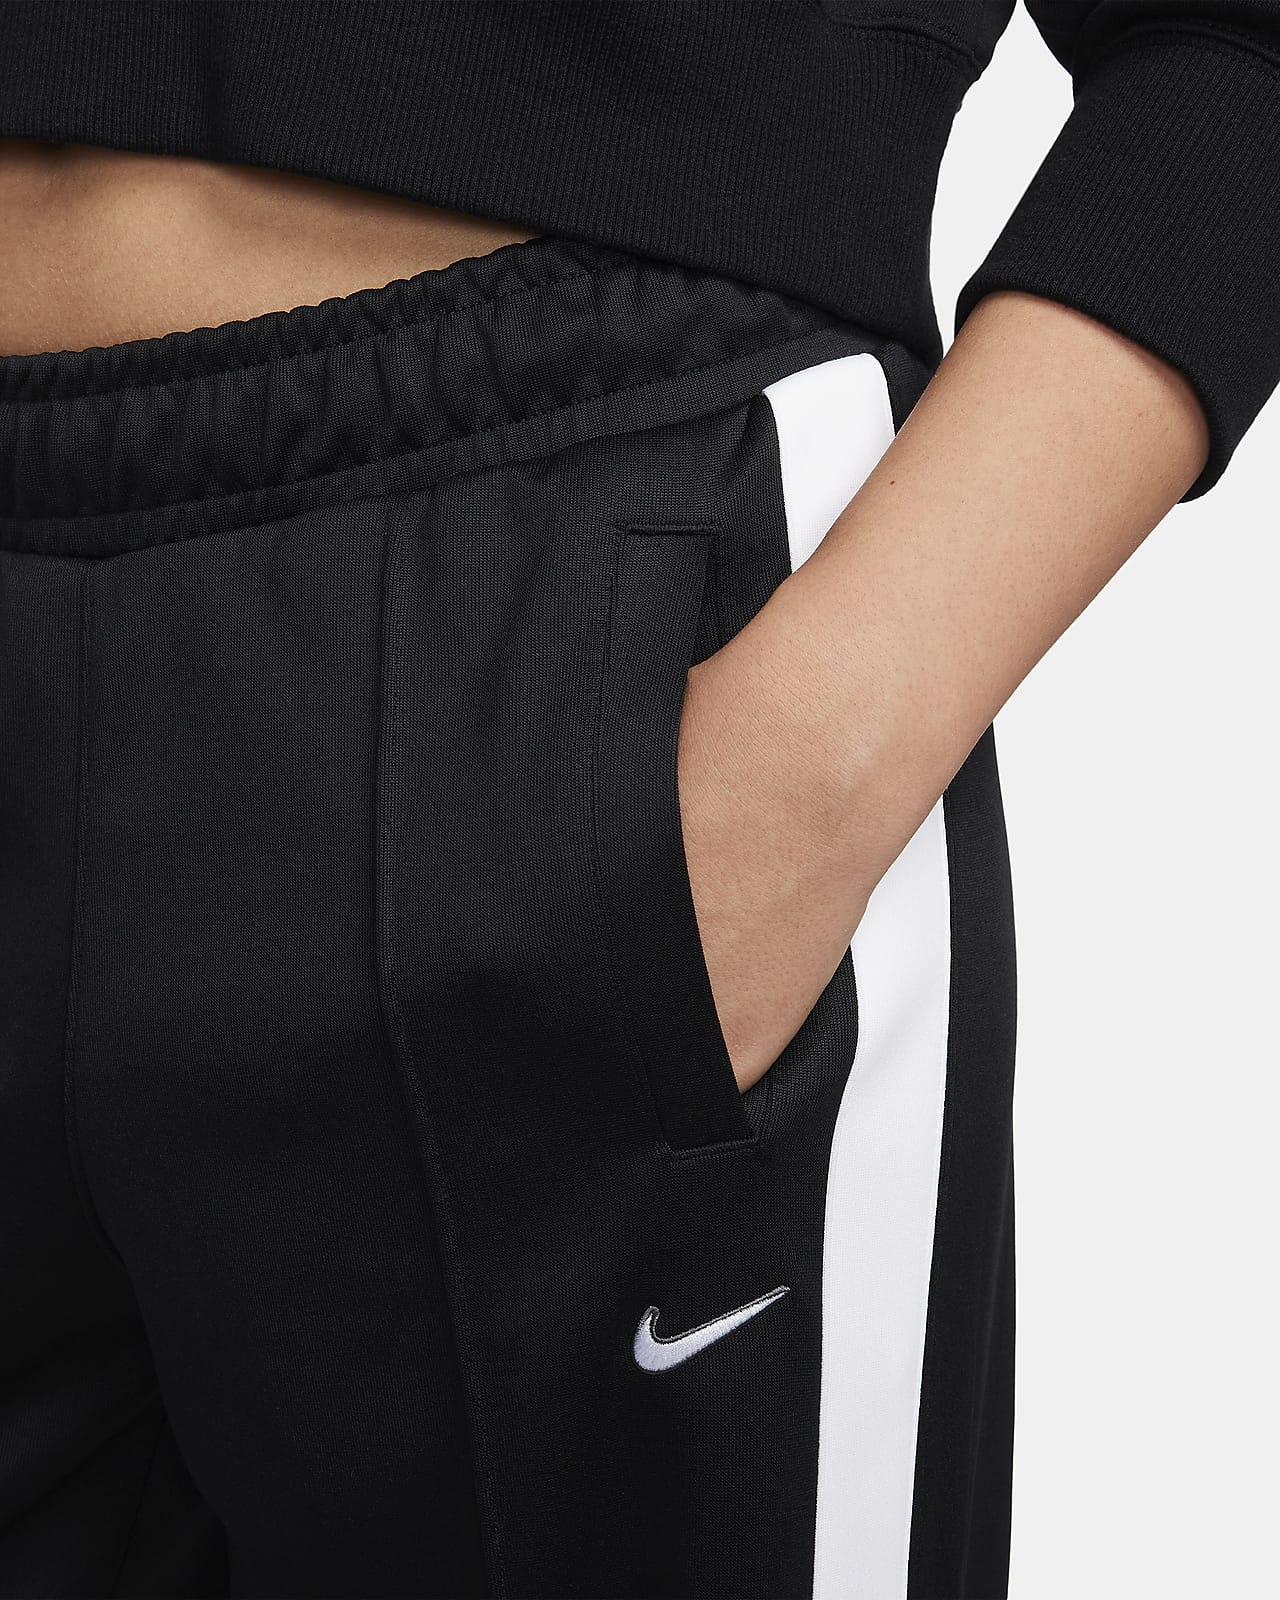 Nike Sportswear Women's Trousers